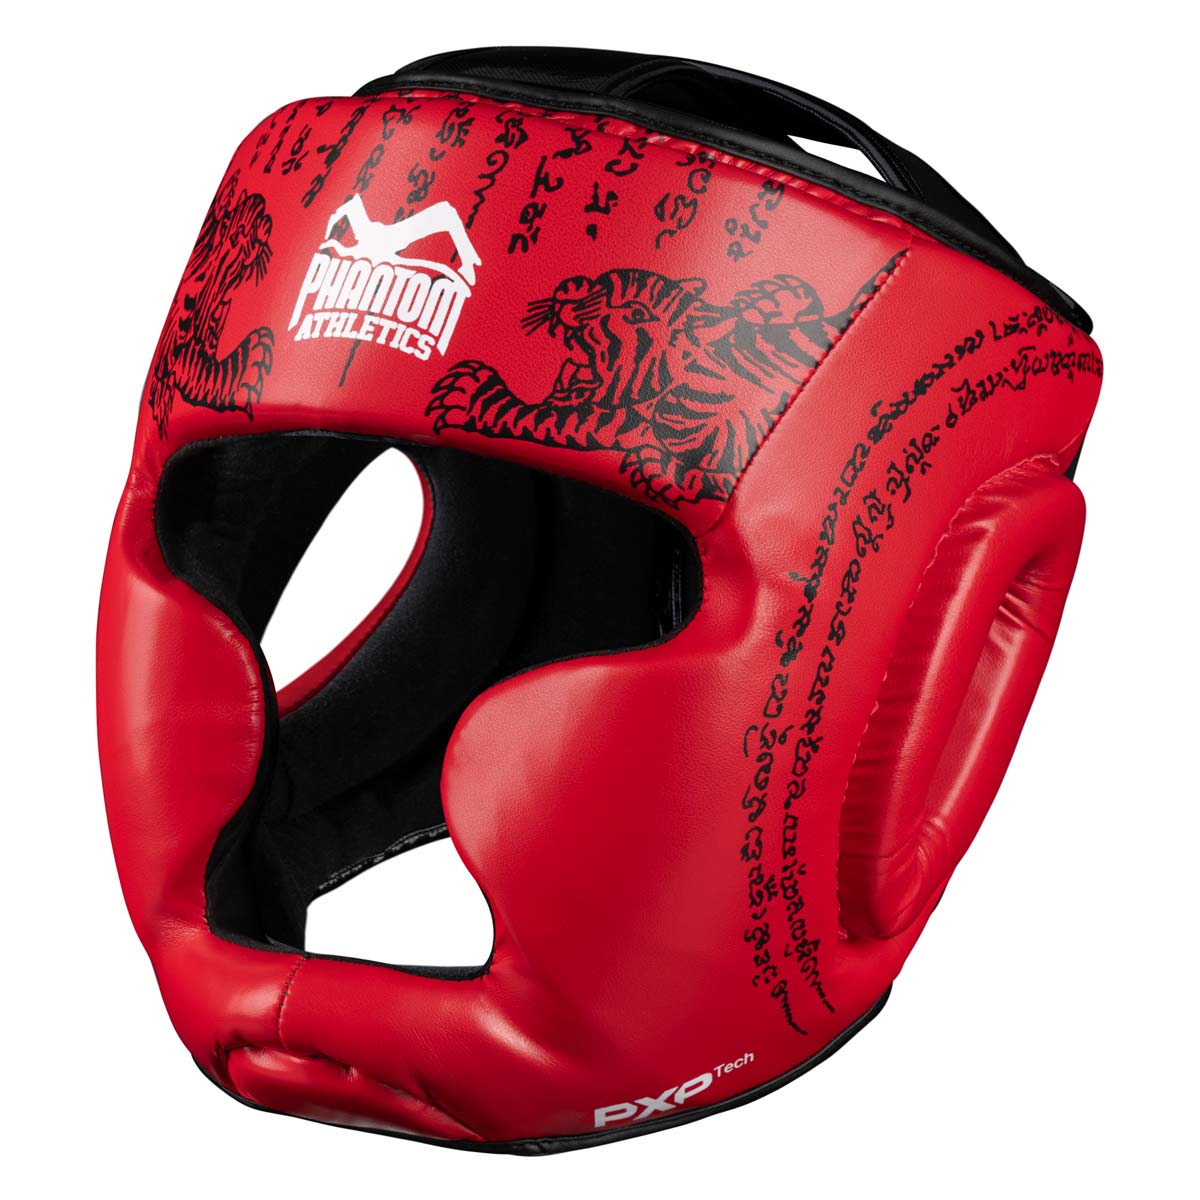 Phantom Muay Thai huvudskydd för thaiboxning och MMA-sparring, tävling och träning. I traditionell Sak Yant-design och färgen röd.